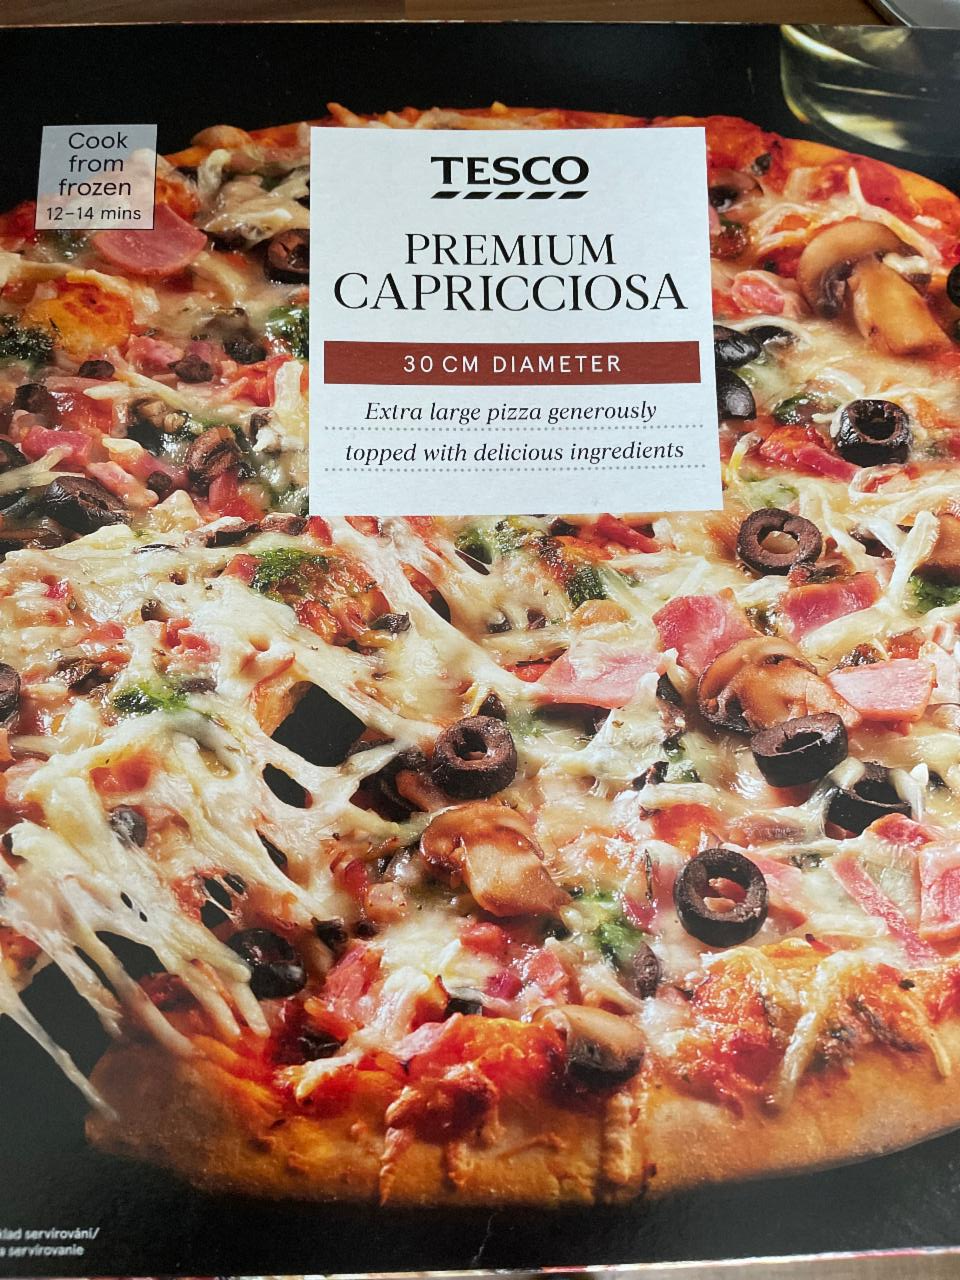 Képek - Tesco premium capricciosa gyorsfagyasztott pizzalap sajttal, sonkával, gombával, olajbogyóval 